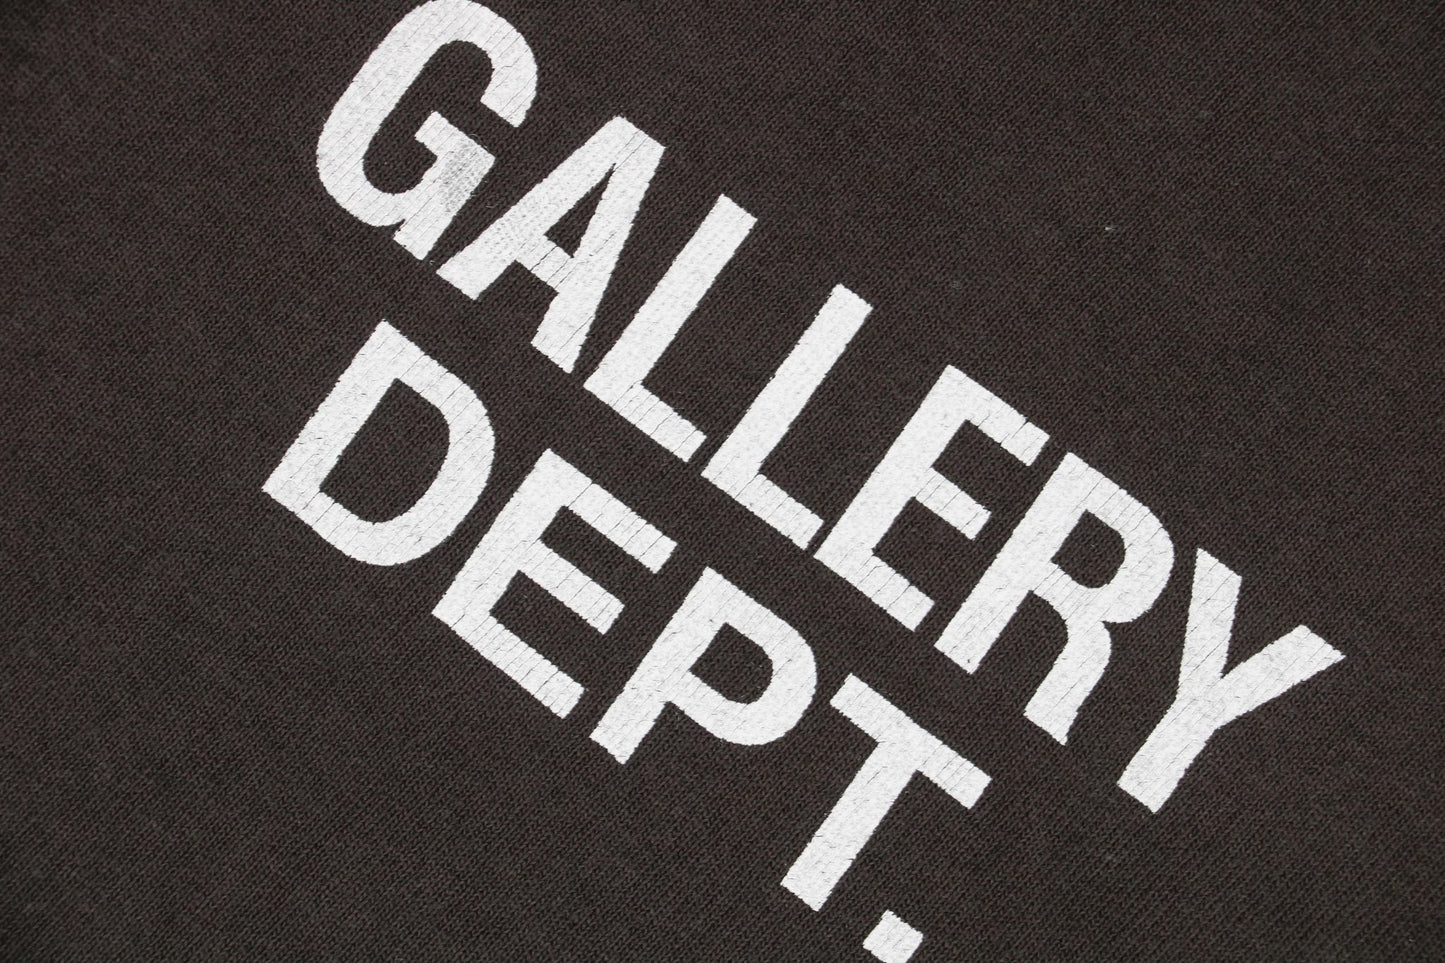 Gallery Dept Black Sweatshirt